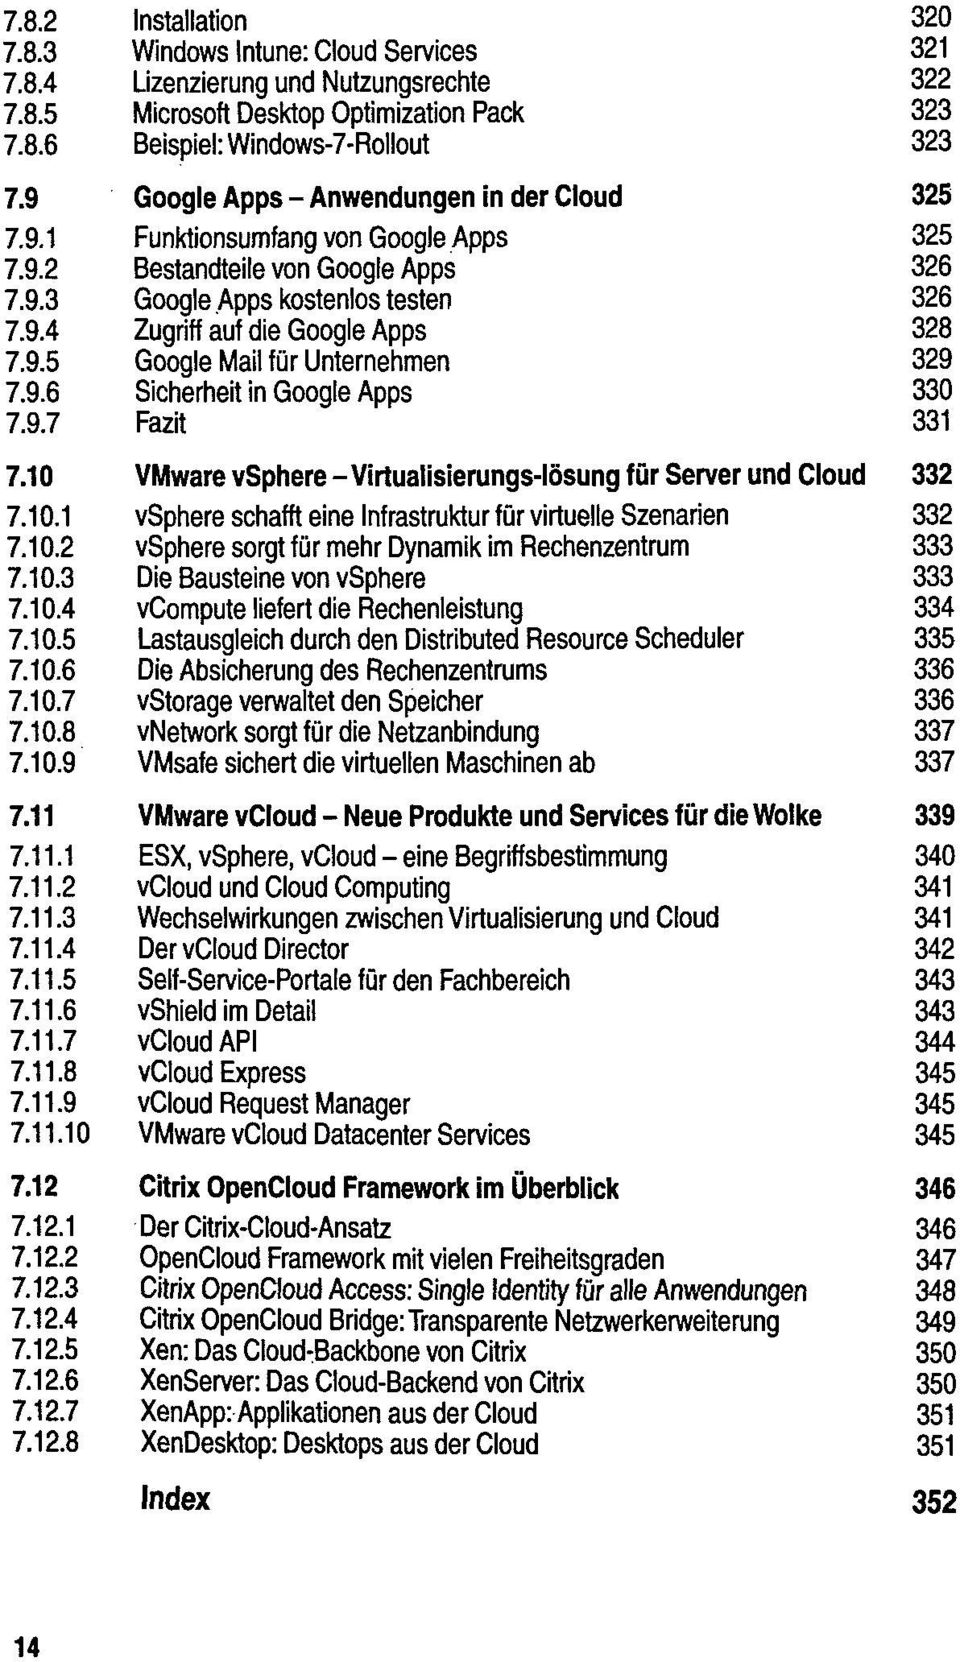 9.5 Google Mail für Unternehmen 329 7.9.6 Sicherheit in Google Apps 330 7.9.7 331 7.10 VMware vsphere - Virtualisierungs-Iösung für Server und Cloud 332 7.10.1 vsphere schafft eine Infrastruktur für virtuelle Szenarien 332 7.